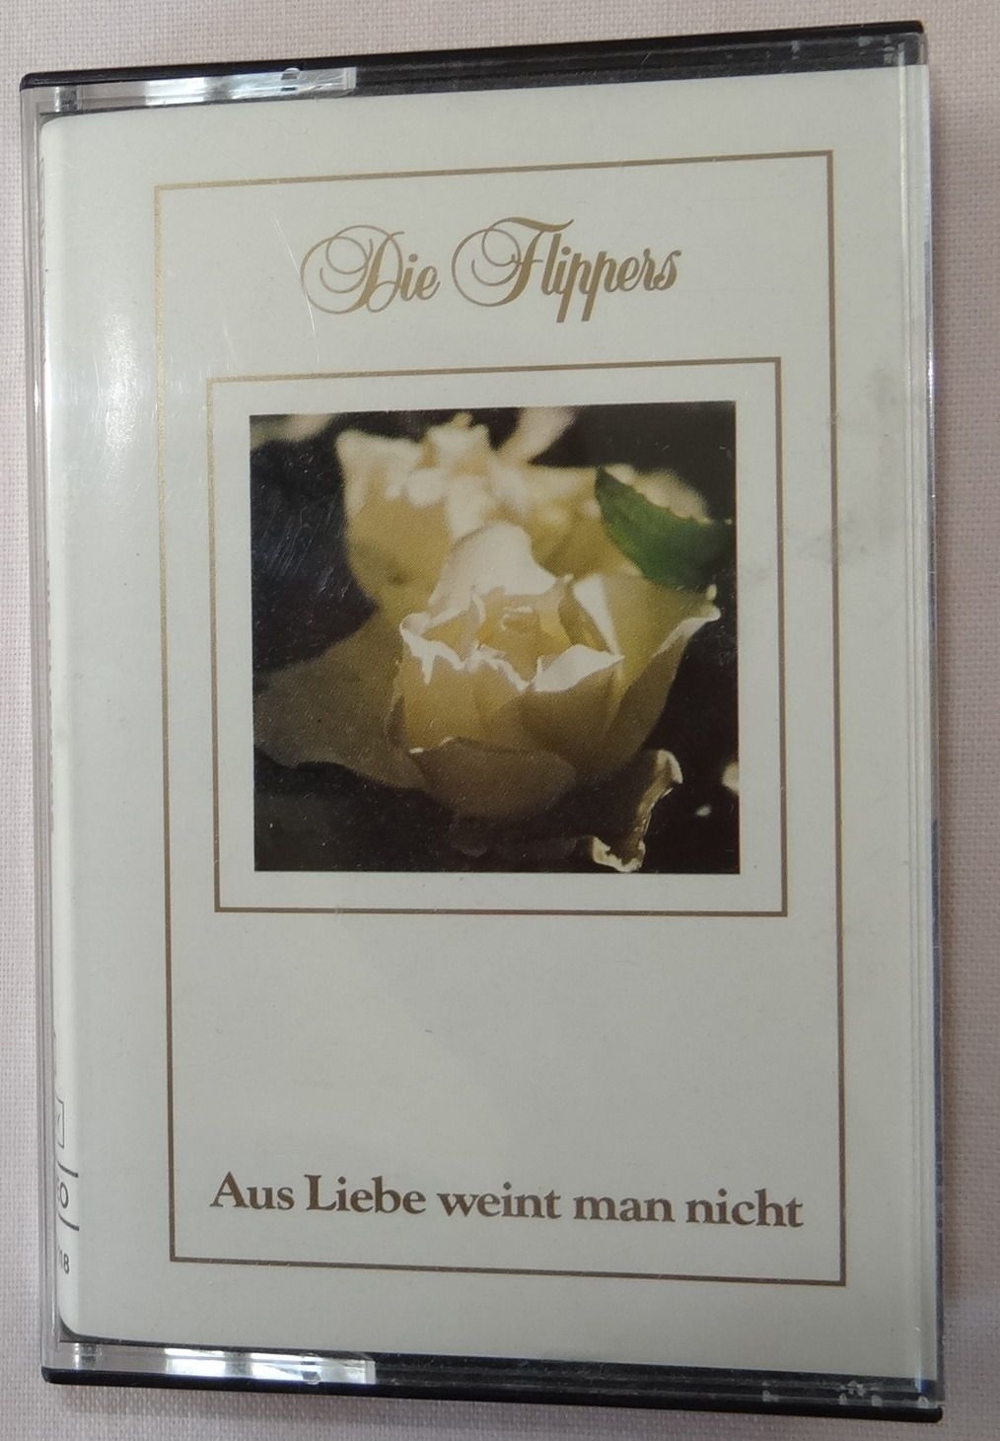 MC Die Flippers Aus Liebe weint man nicht bellaphon 470-01-018 Musikkassette 1987 Schlager Oldies